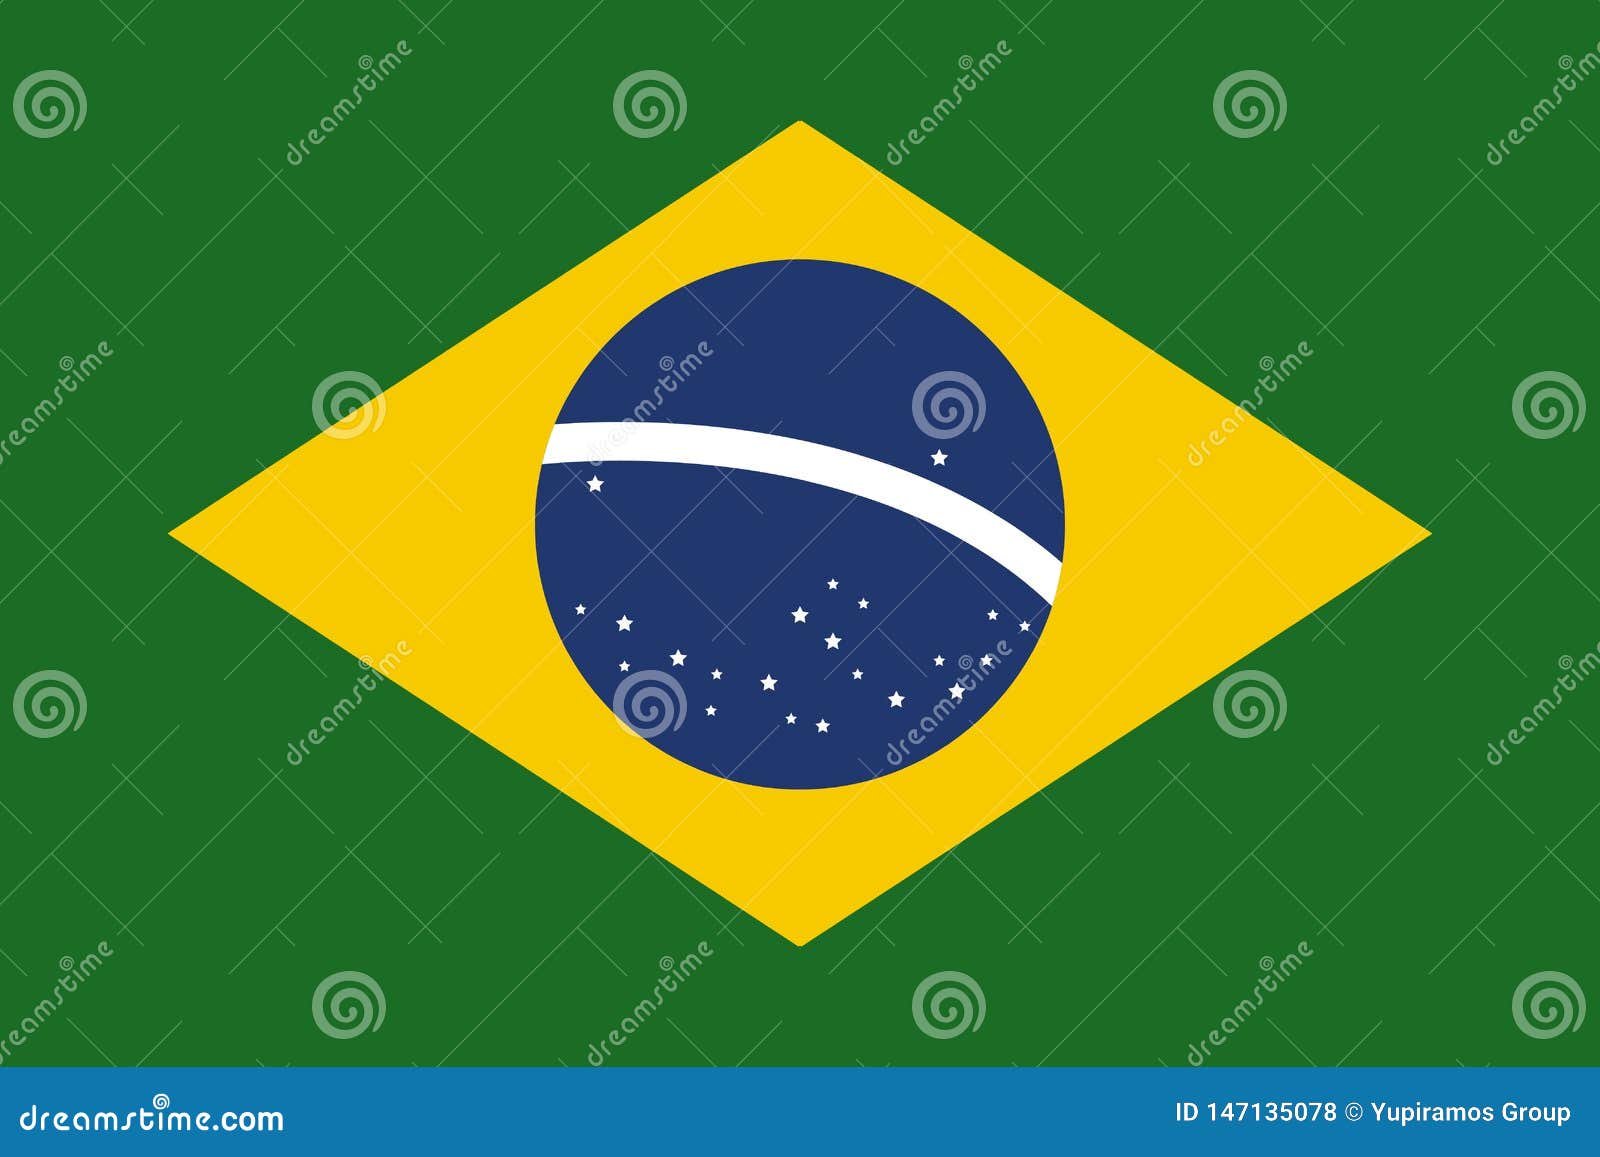 brasil flag flat 